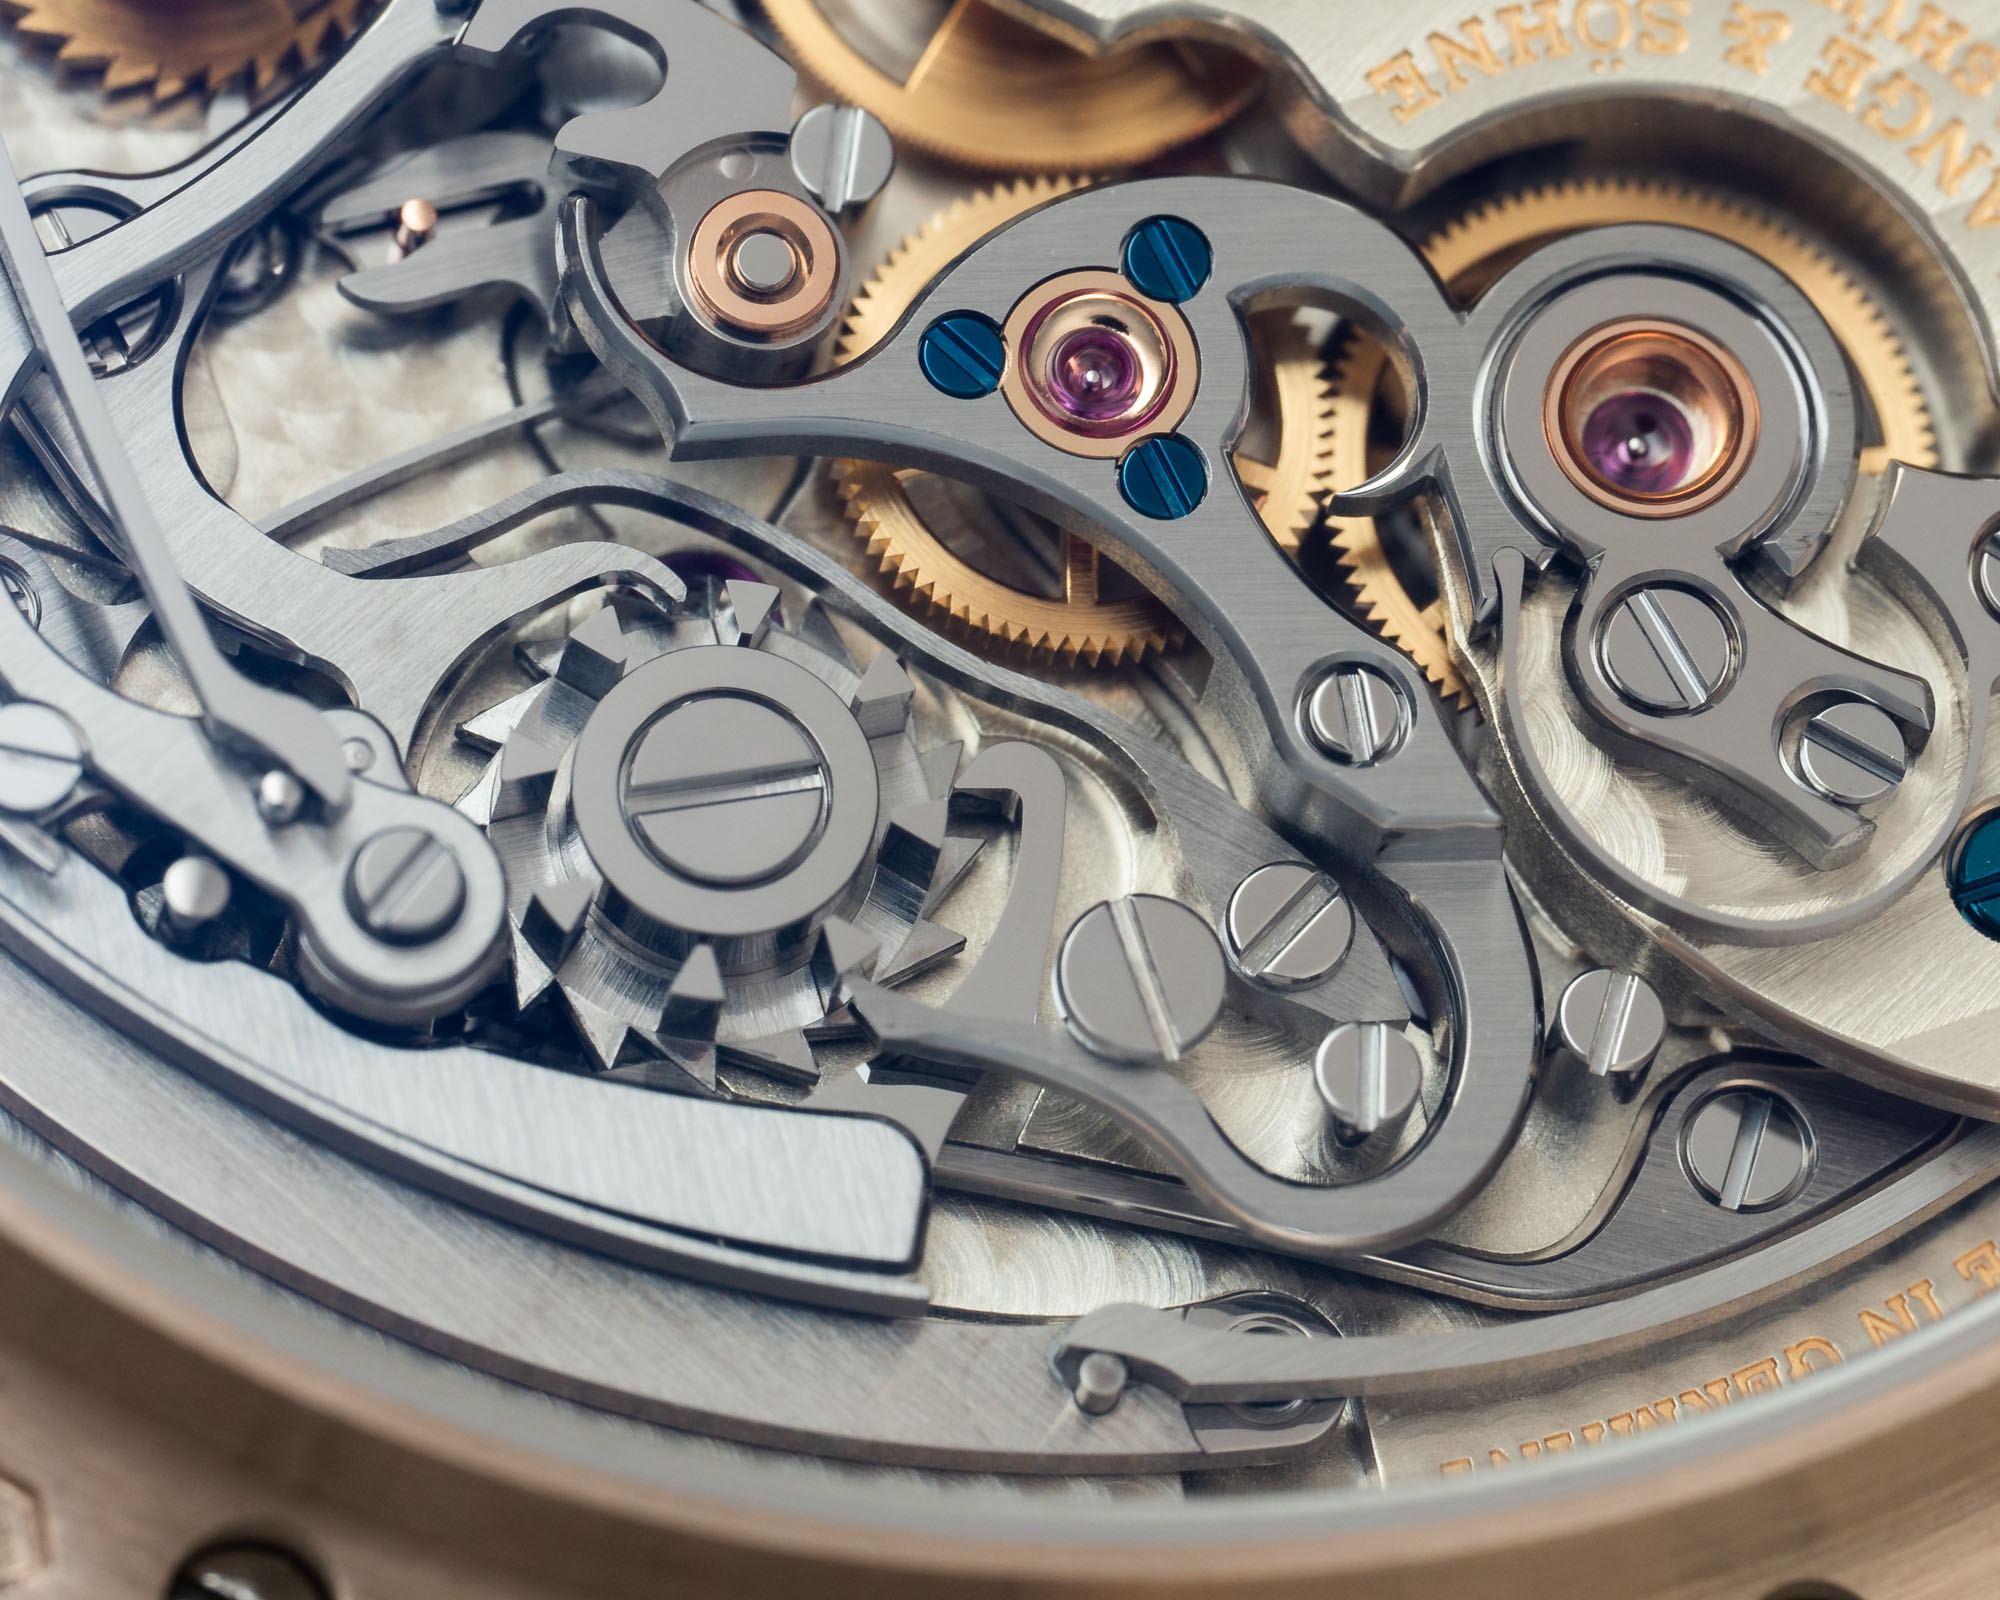 Идеальный статусный аксессуар: часы A. Lange & Söhne Datograph Perpetual Tourbillon Honeygold 'Lumen'